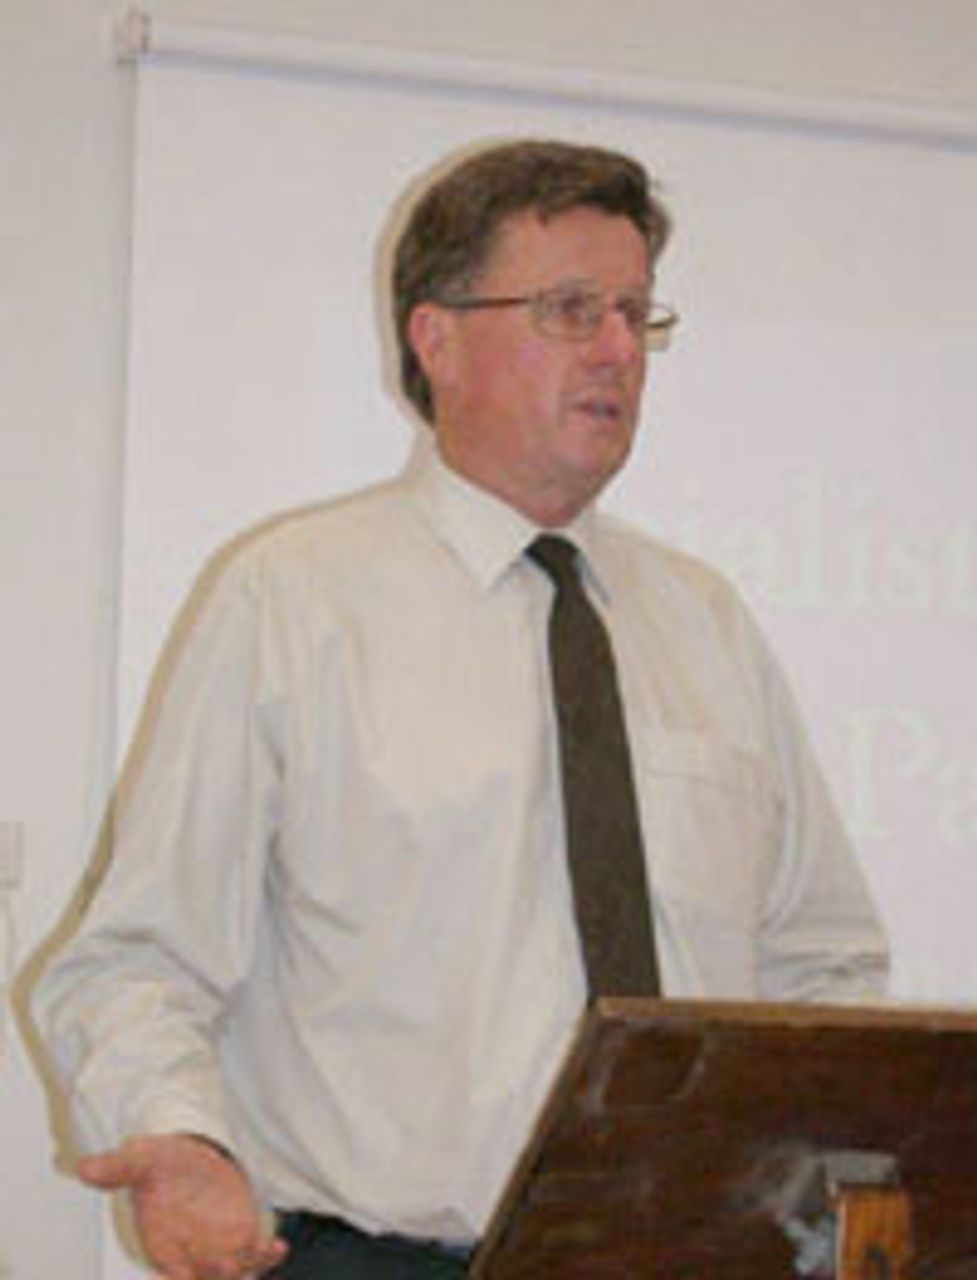 Peter Byrne